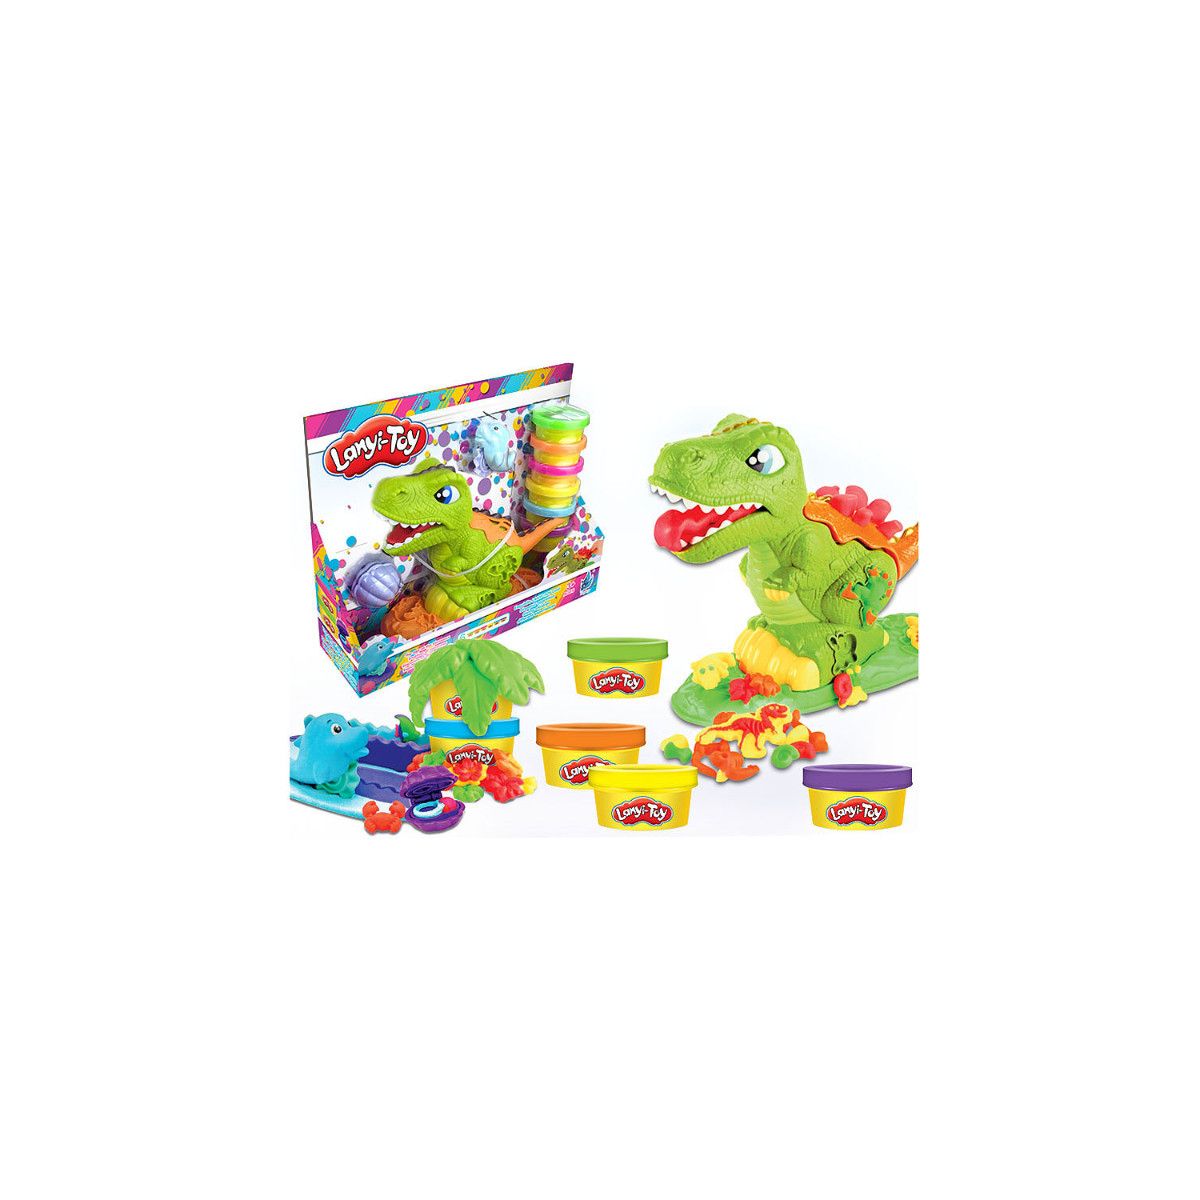 Masa plastyczna dla dzieci Dinozaur mix Bigtoys (BPLA8340)